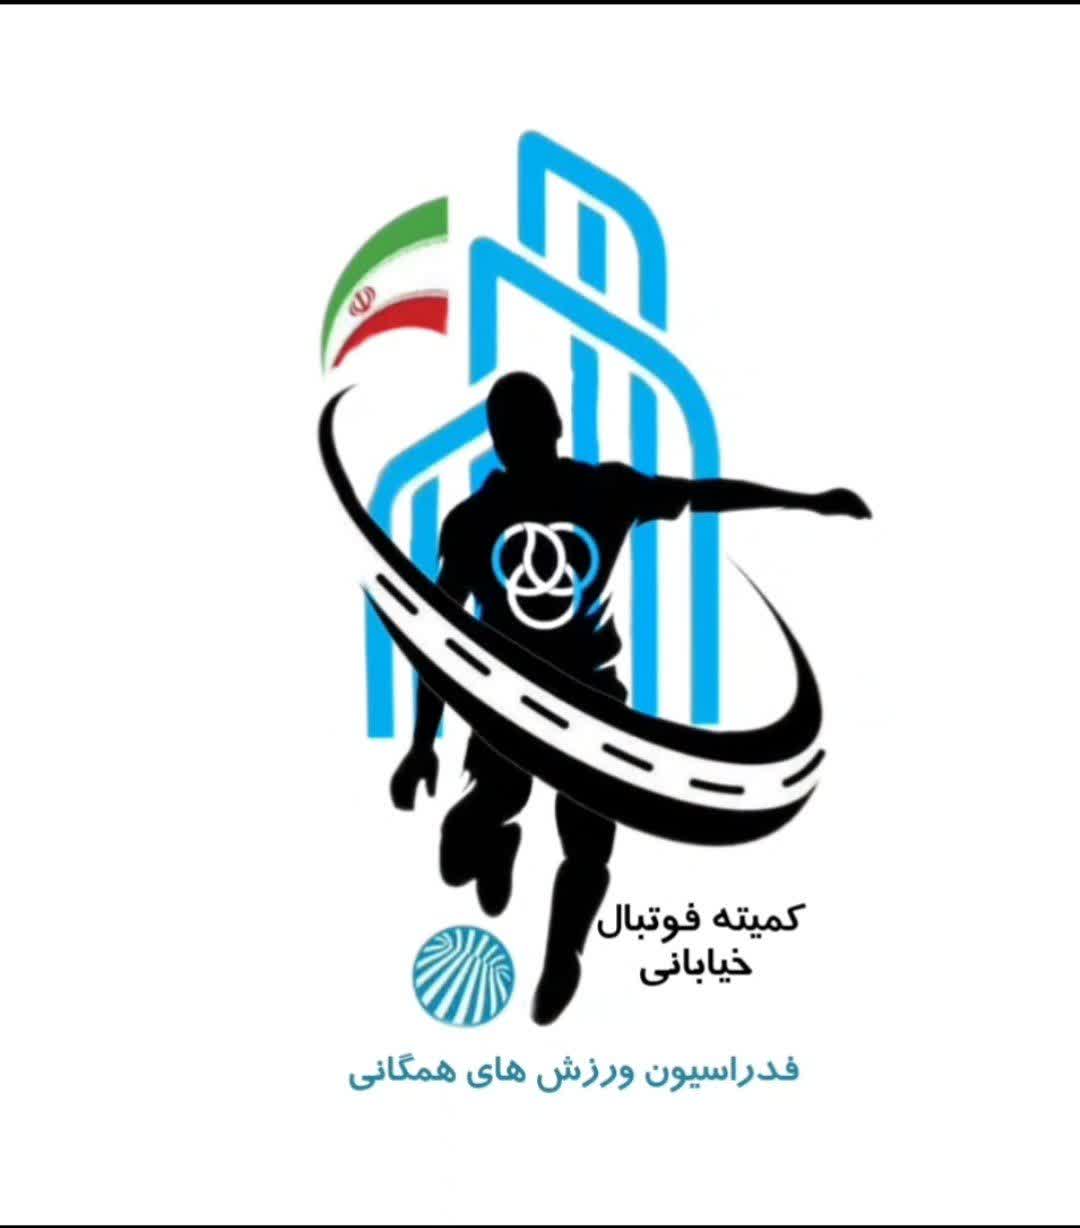 کمیته فوتبال خیابانی خوزستان برگزار میکند